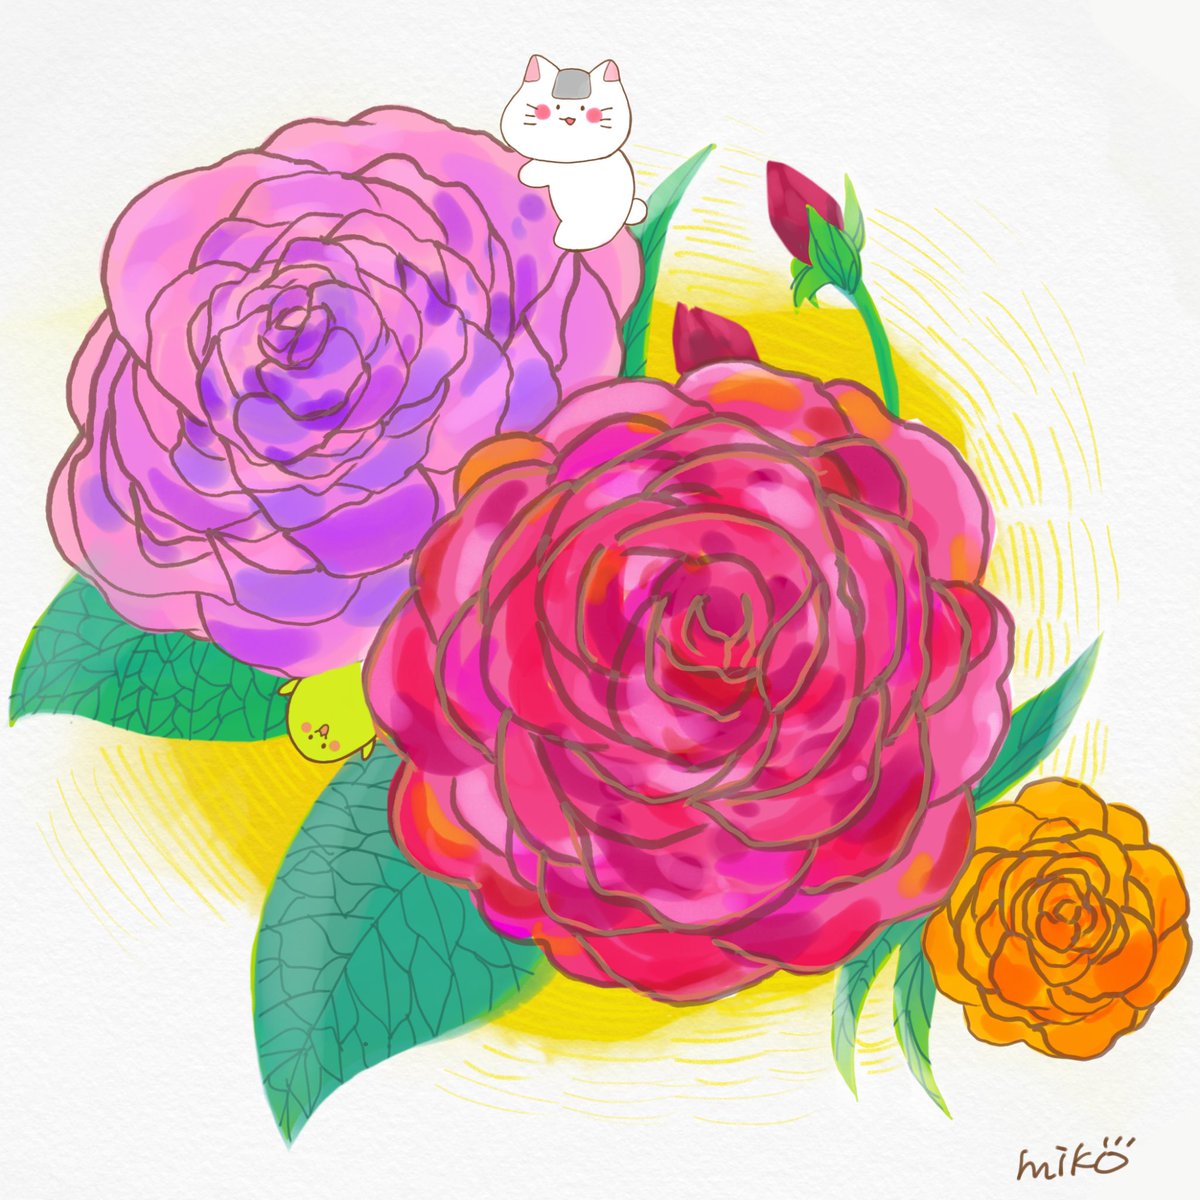 みぃこ 薔薇 花言葉は愛 美 お花って描くの難しいけど 色々な色を使って楽しく描くことが出来ました イラスト好きな人と繋がりたい デジタルイラスト お絵描き好きな人と繋がりたい クリエイター もちにゃんと枝まる 癒しキャラ イラスト